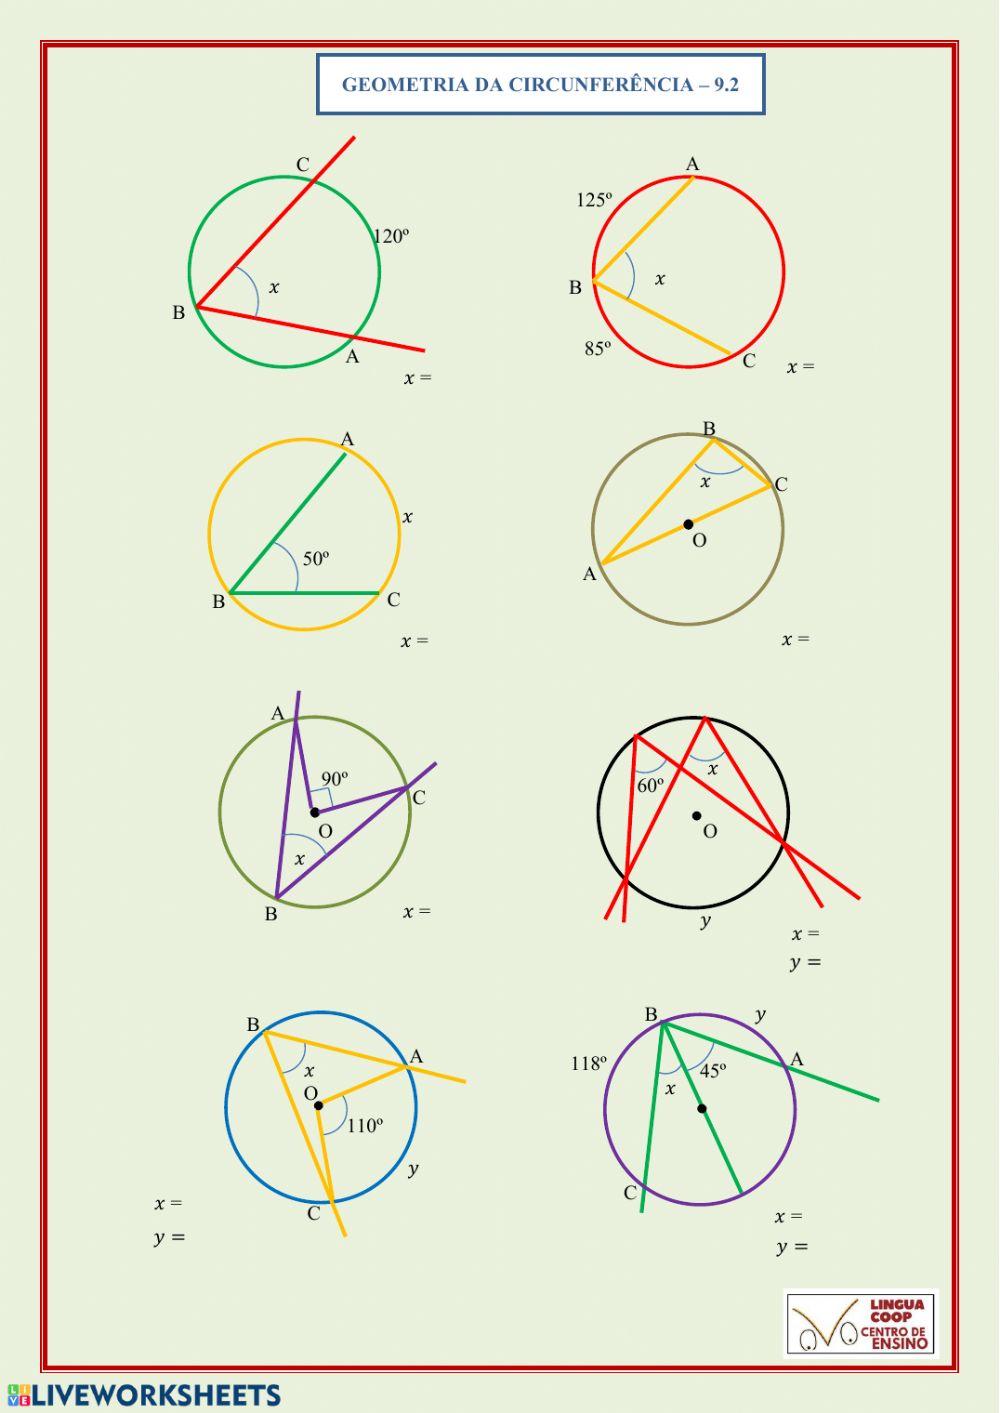 Geometria da circunferência 9.2